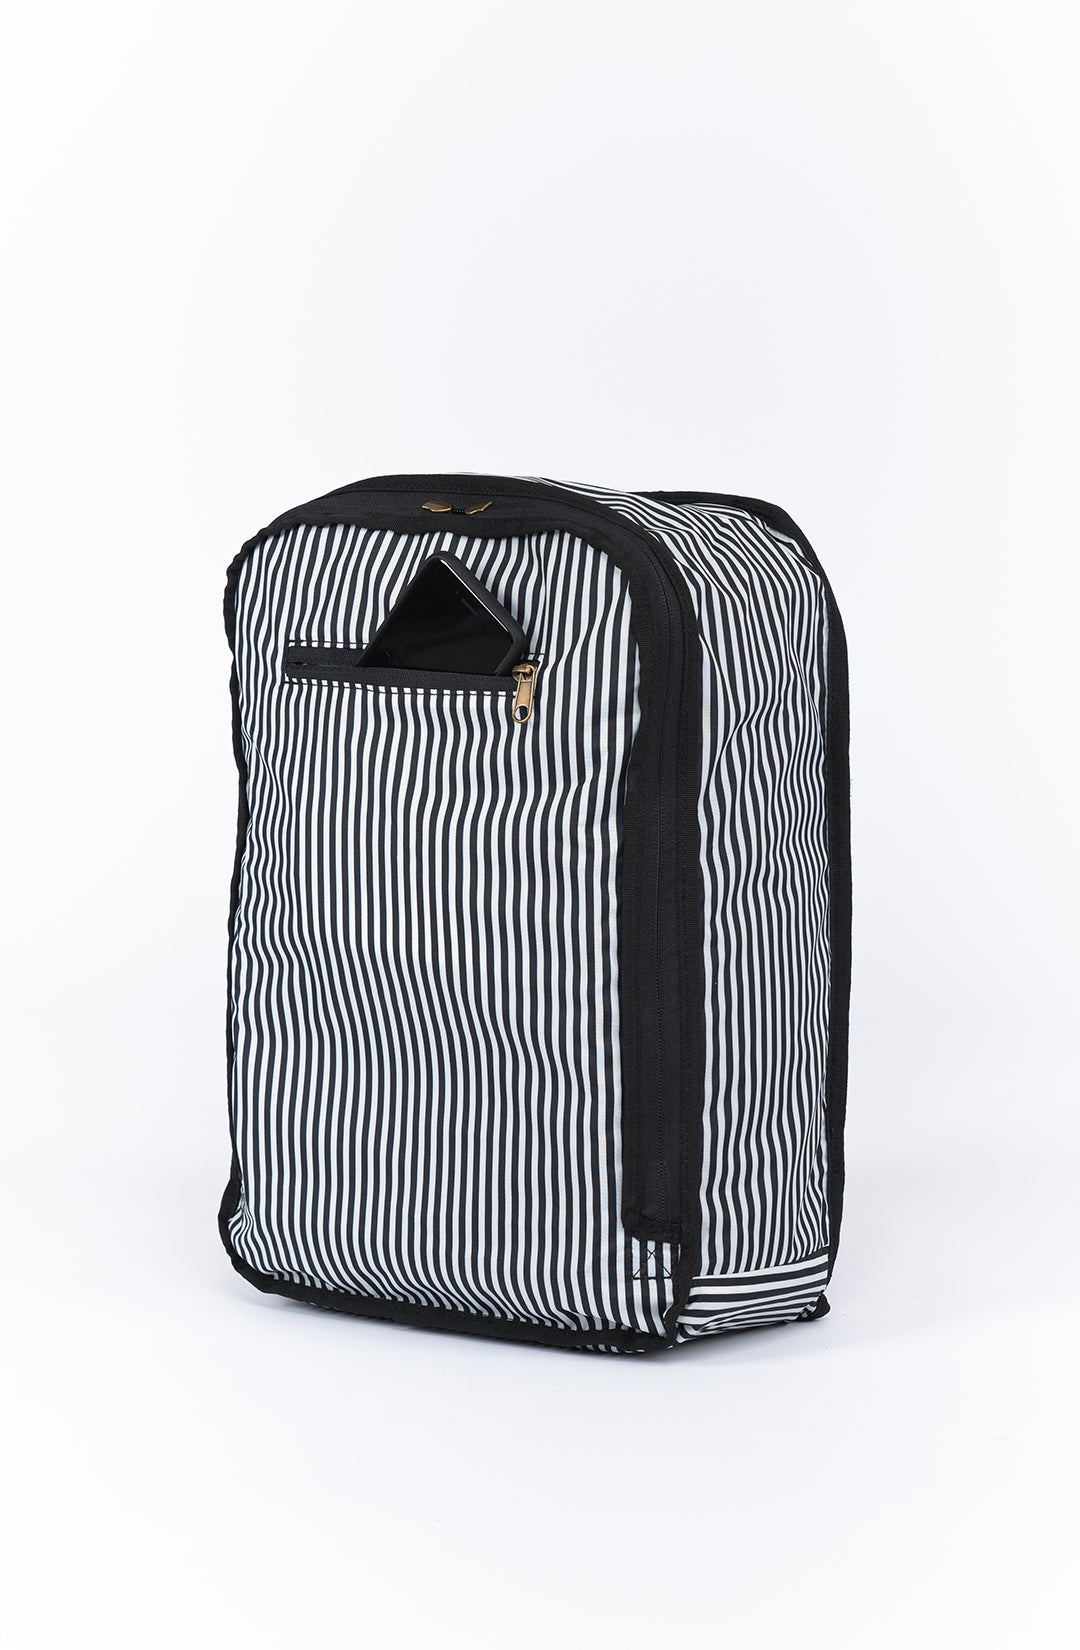 Elkin Diaper Bag Backpack (Black)